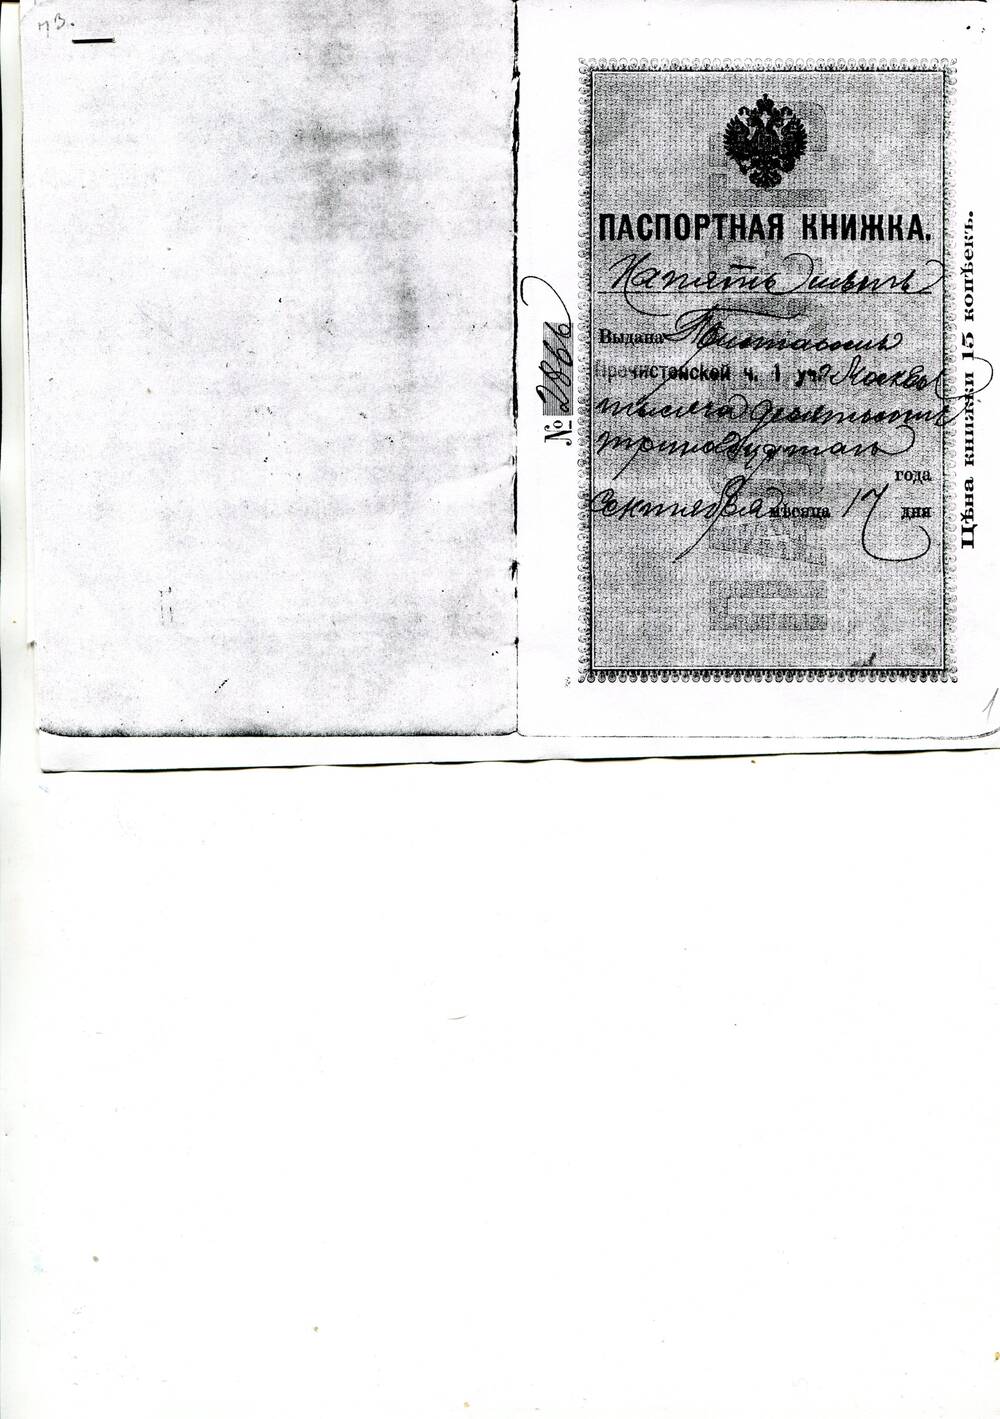 Копия паспортной книжки № 2866 Сергея Ивановича Юркевича.